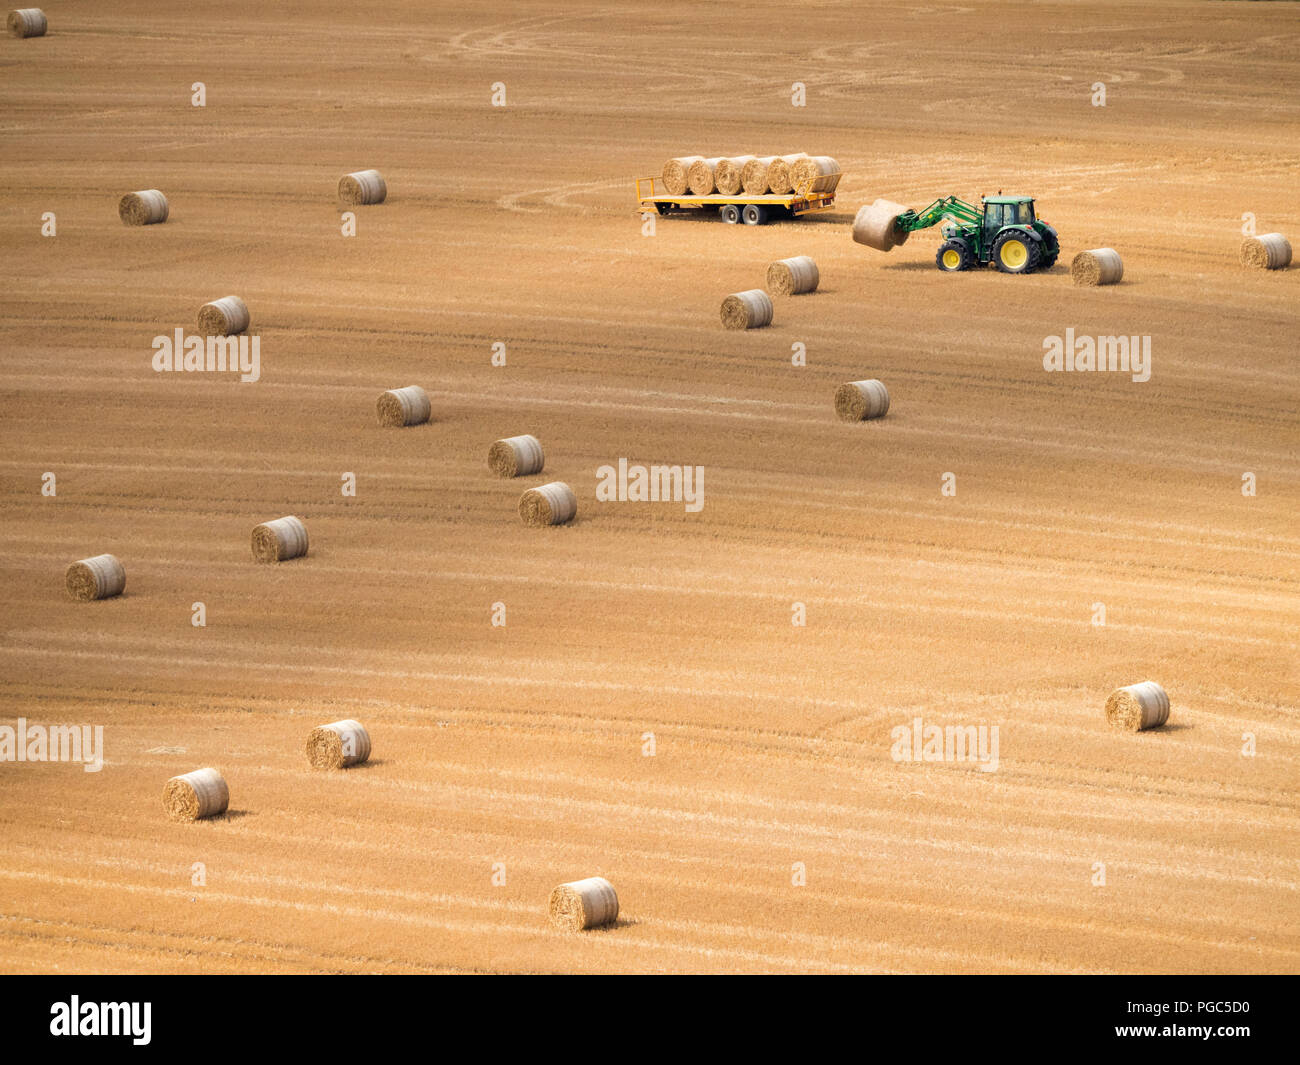 Tracteur avec fourchette verte ronde collecte des bottes de foin dans un champ, et l'empilage sur une remorque, près de Bedfordshire, Angleterre, Whipsnade Banque D'Images